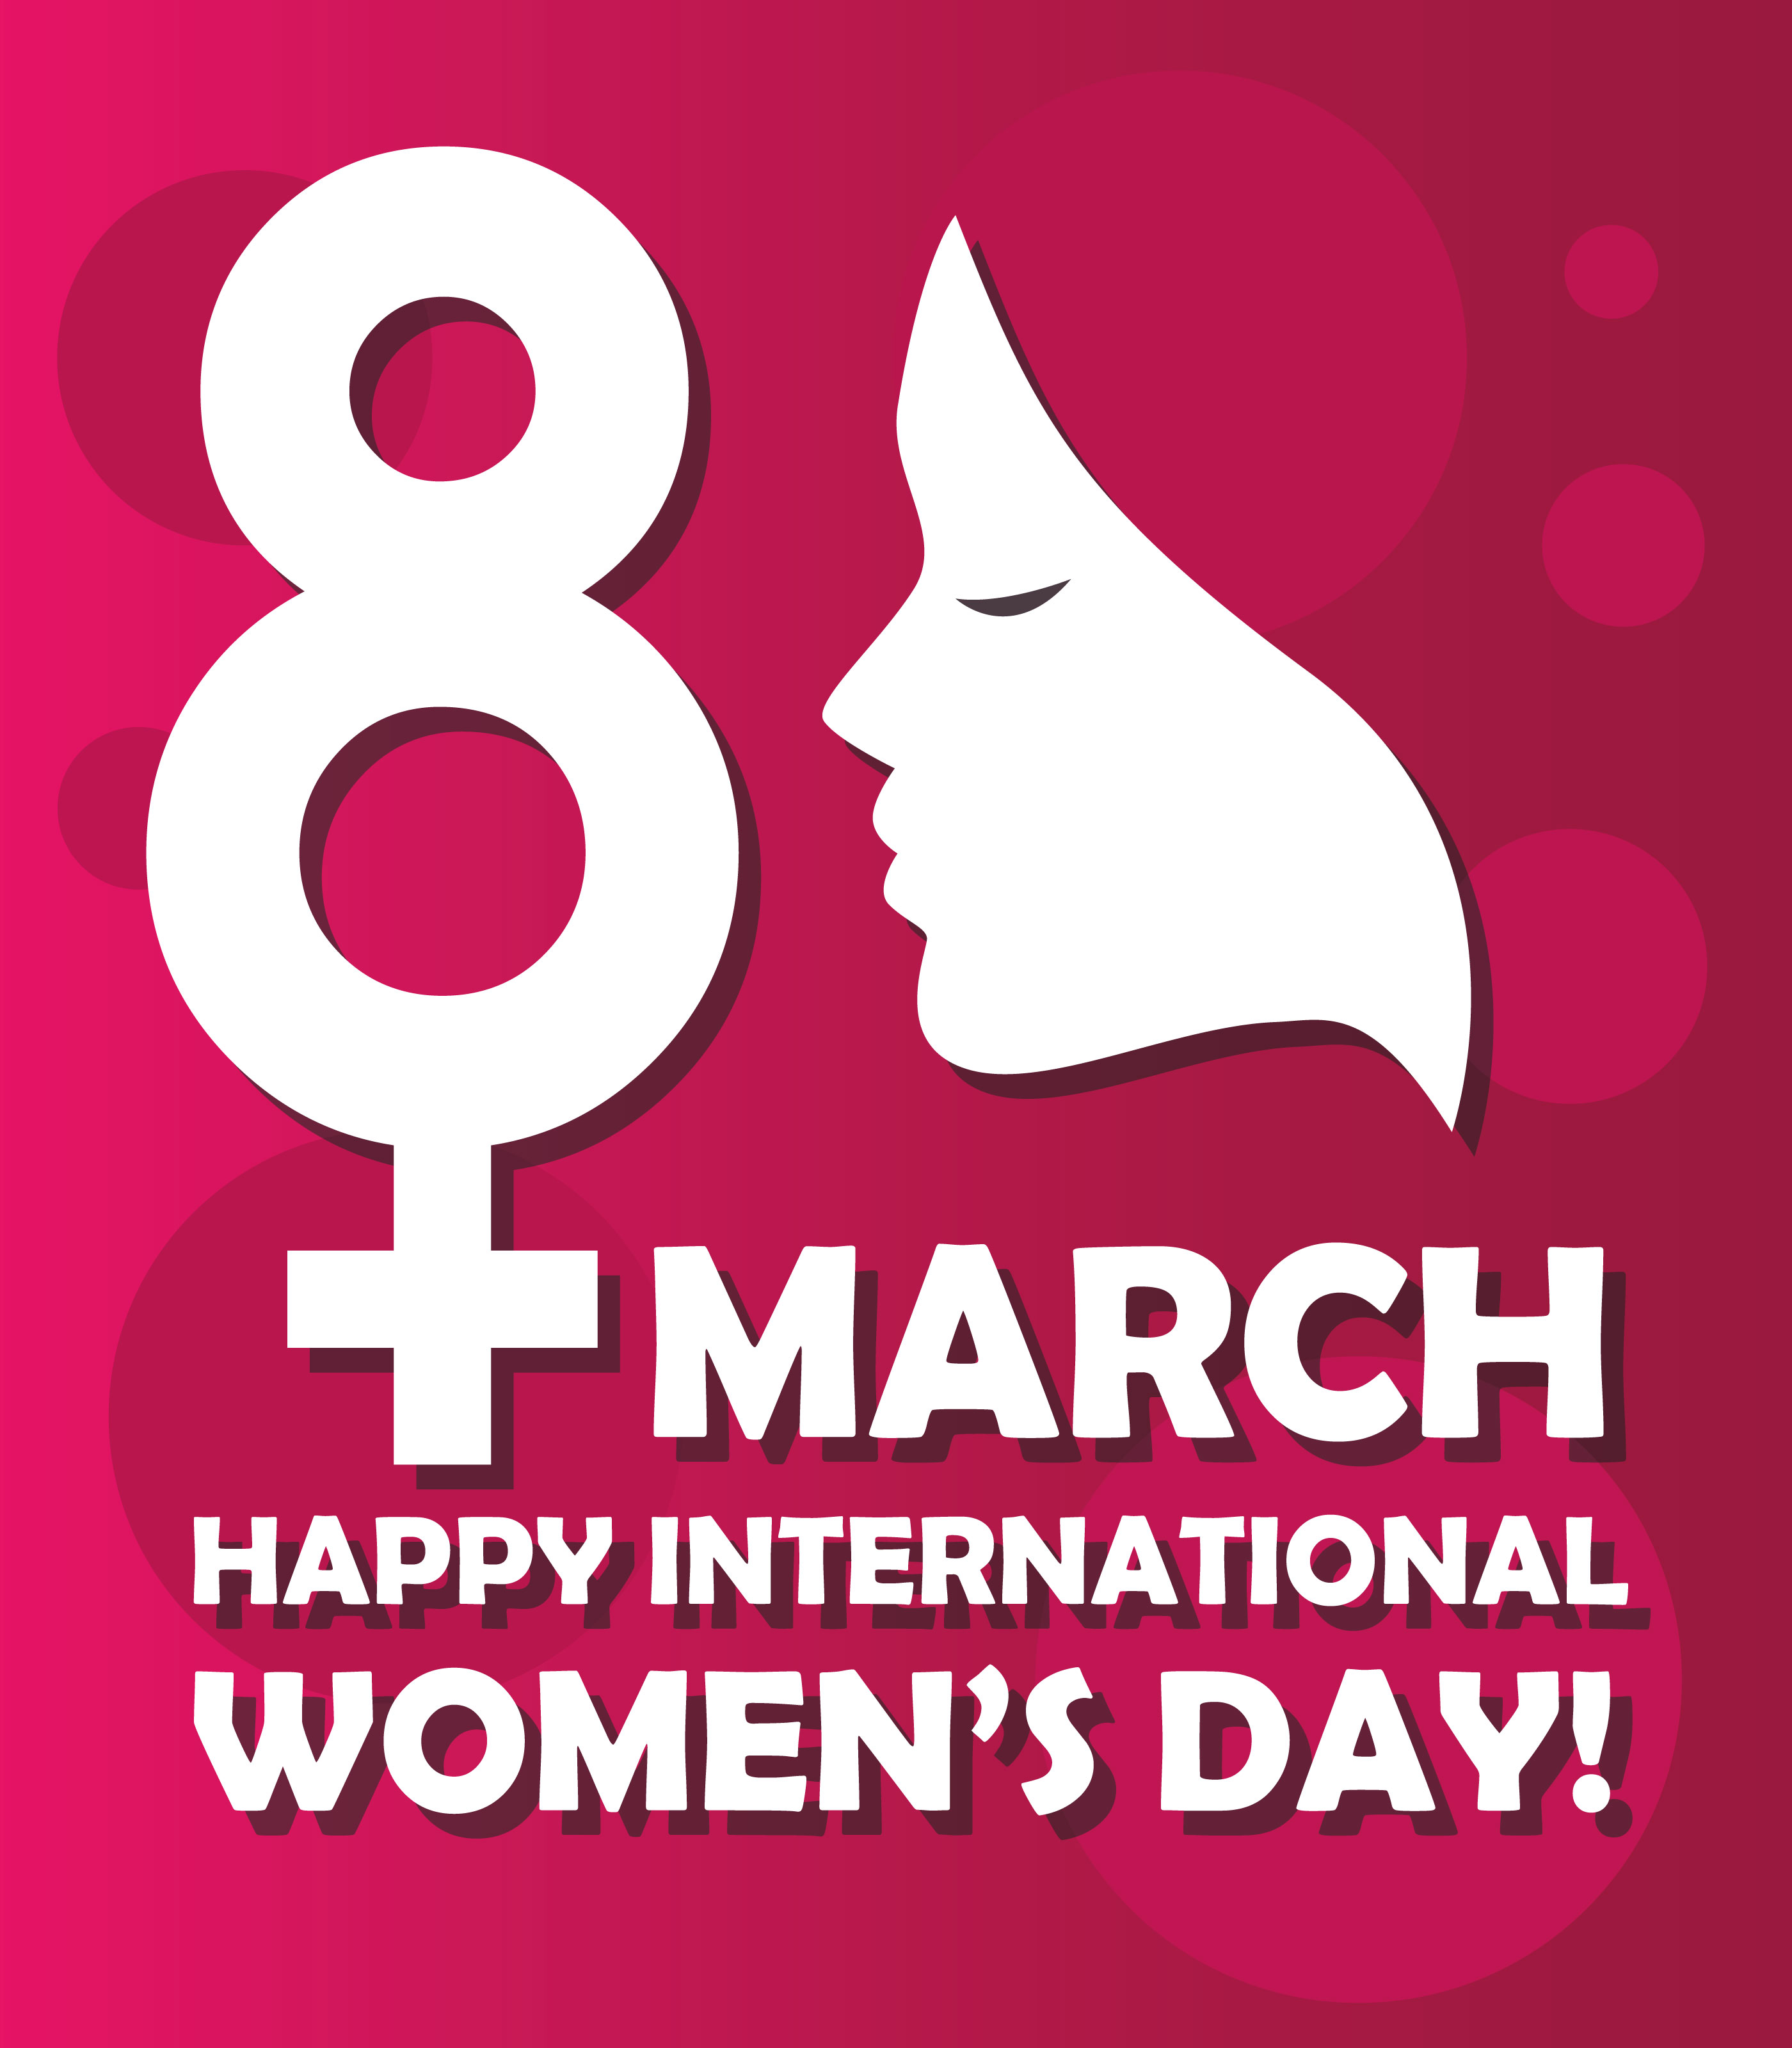 Happy International Women's Day - Download Free Vectors ...